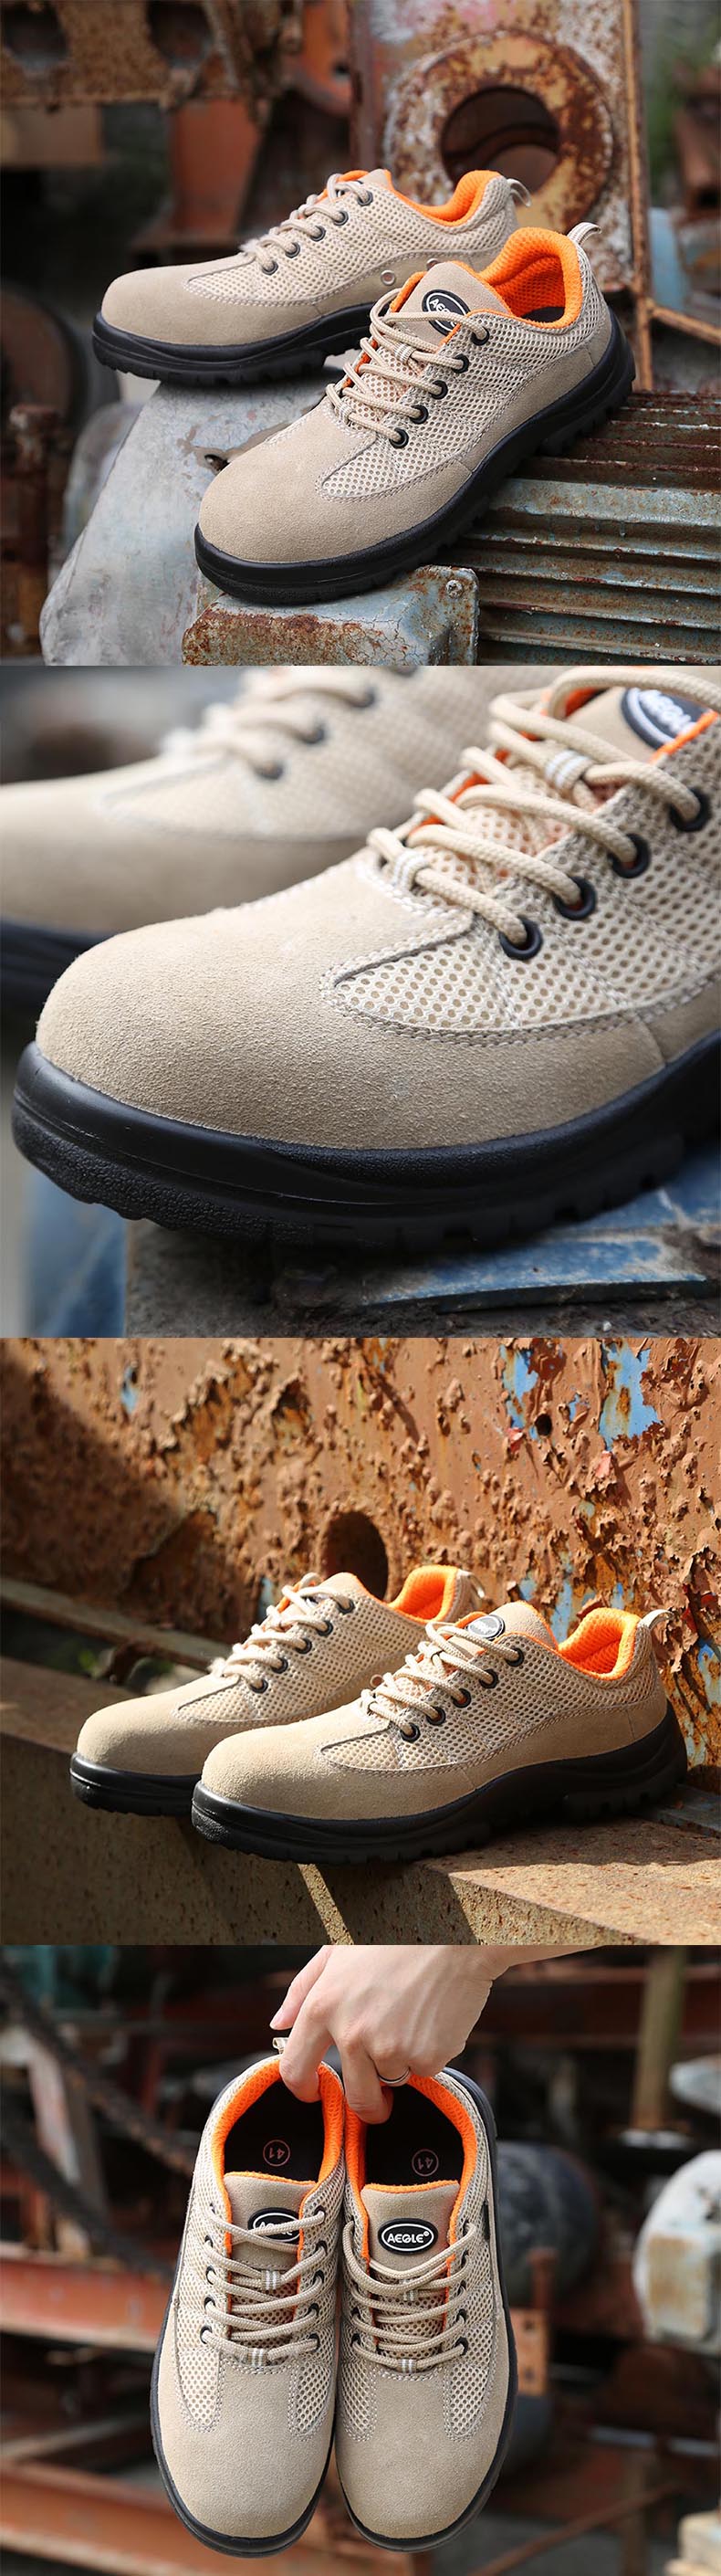 羿科60725134防油耐磨安全鞋图片